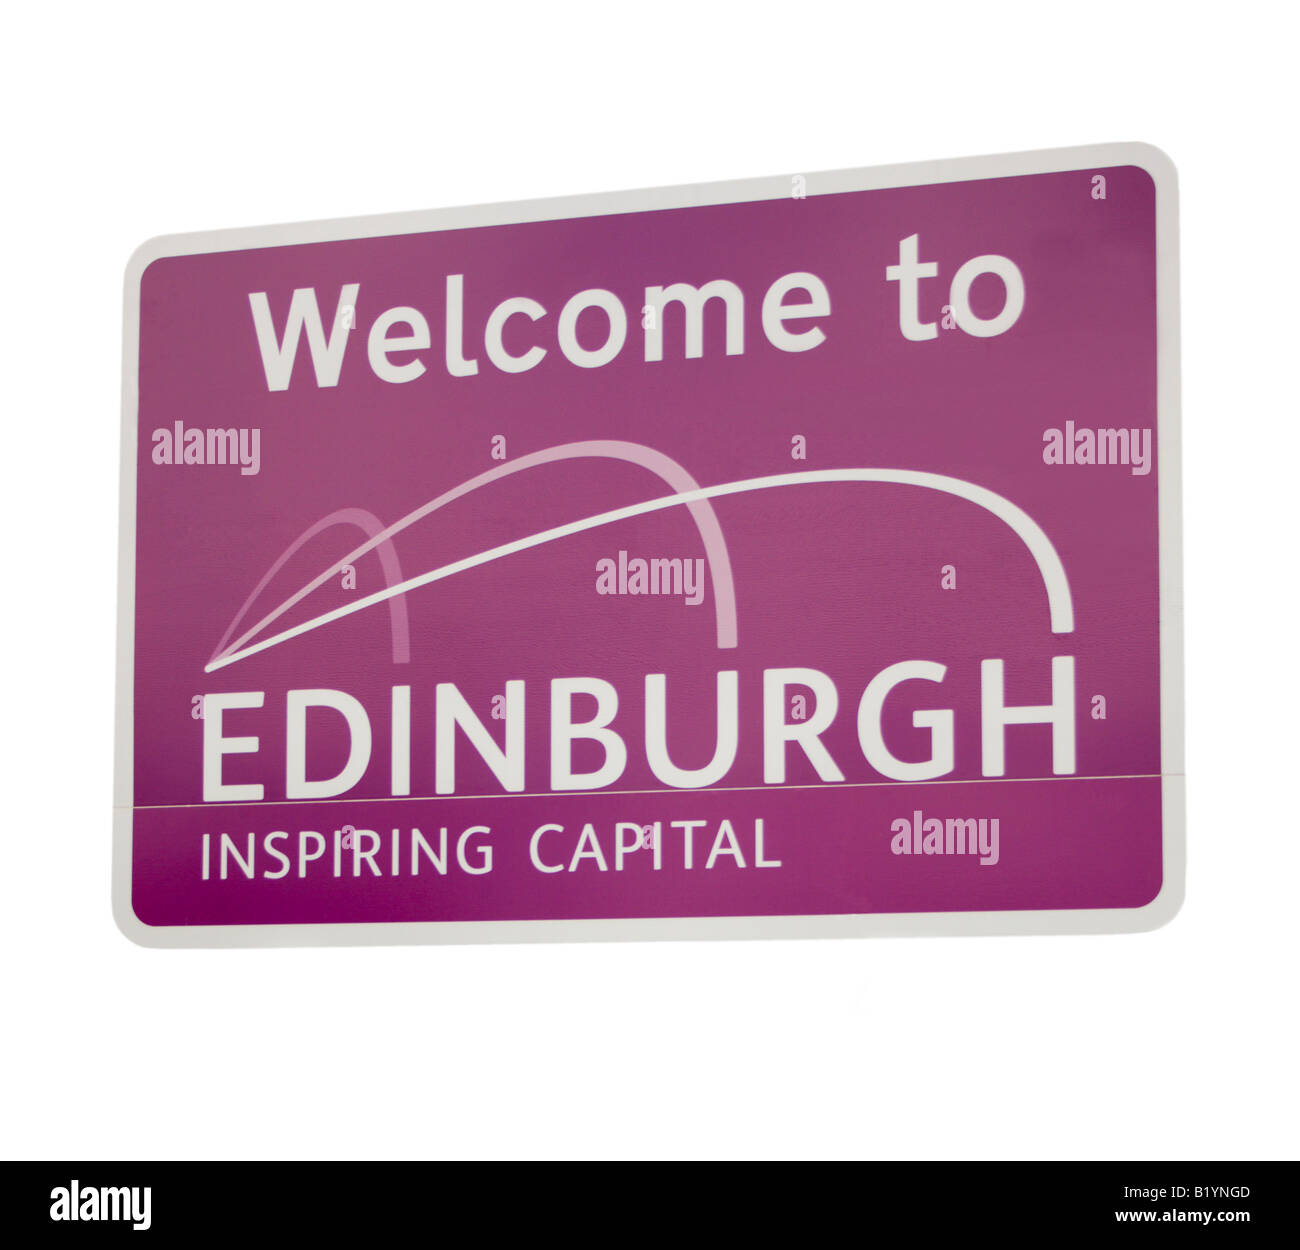 Bienvenue à Édimbourg, capitale d'inspiration - road sign in Scotland, UK Banque D'Images